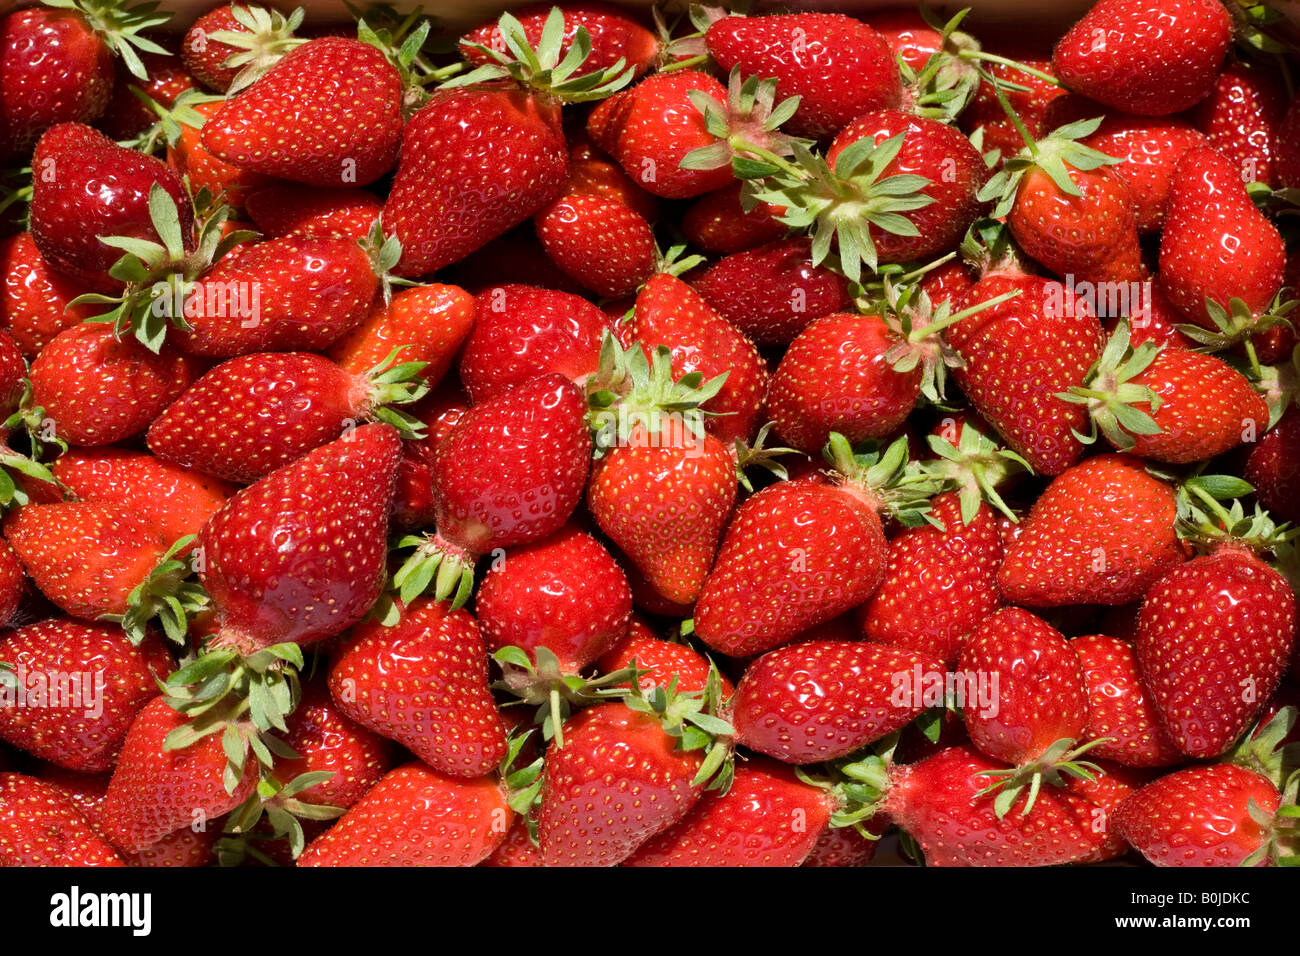 Loose strawberries (Fragaria vesca). Fraises en vrac (Fragaria vesca). Stock Photo